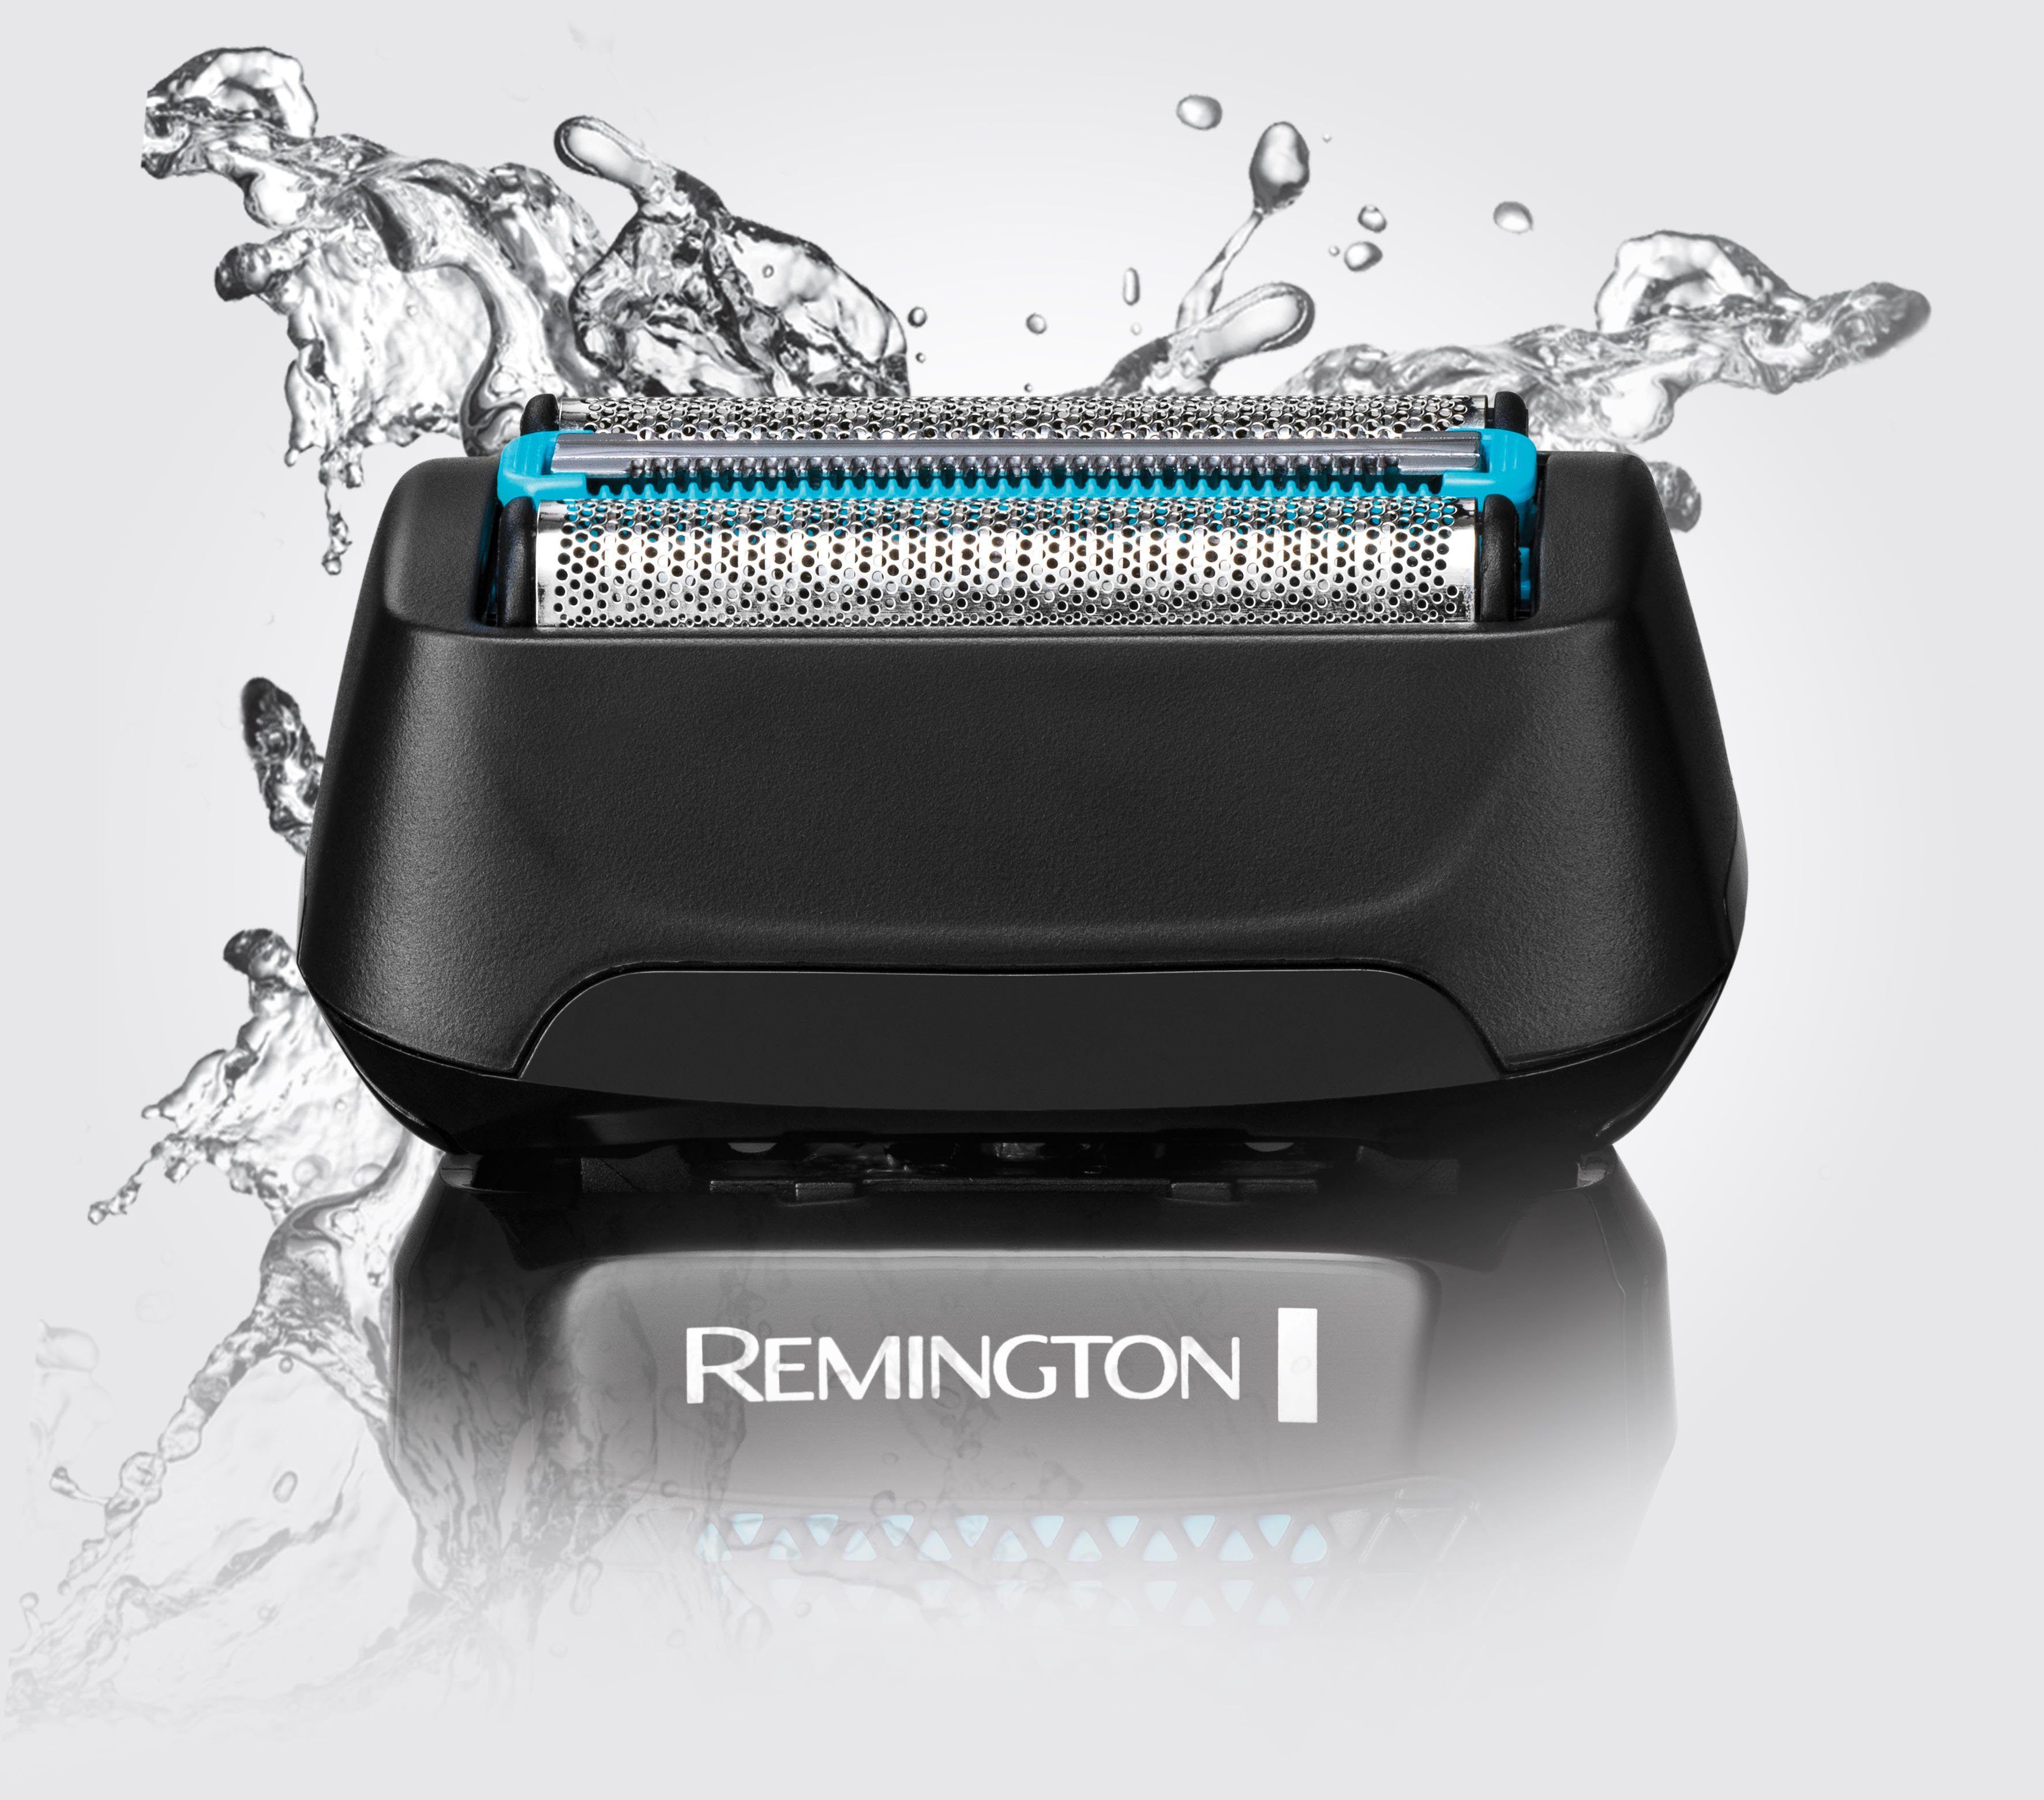 Remington Elektrorasierer F6000 Style 1, Wasserdichtes Rasiersystem, 100 wasserdicht, 3-Tage-Bart mit % & Trockenrasur, Langhaartrimmer, Aufsätze: Styler Nass